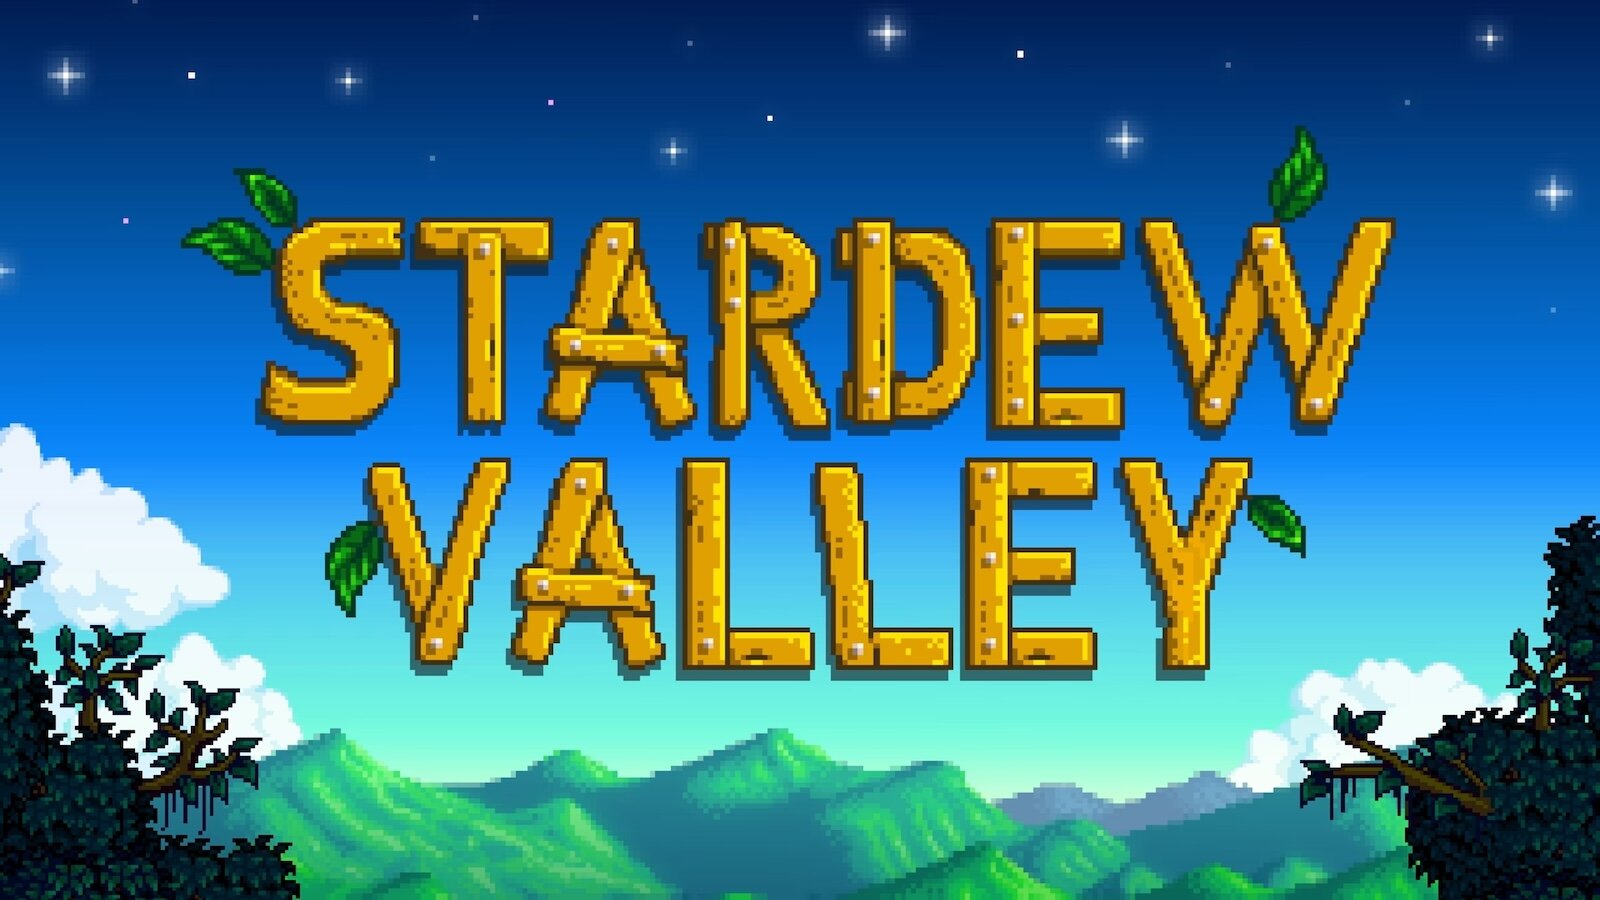 Геймер создал хардкорный мод для Stardew Valley: он удаляет сохранения, если открыть базу знаний